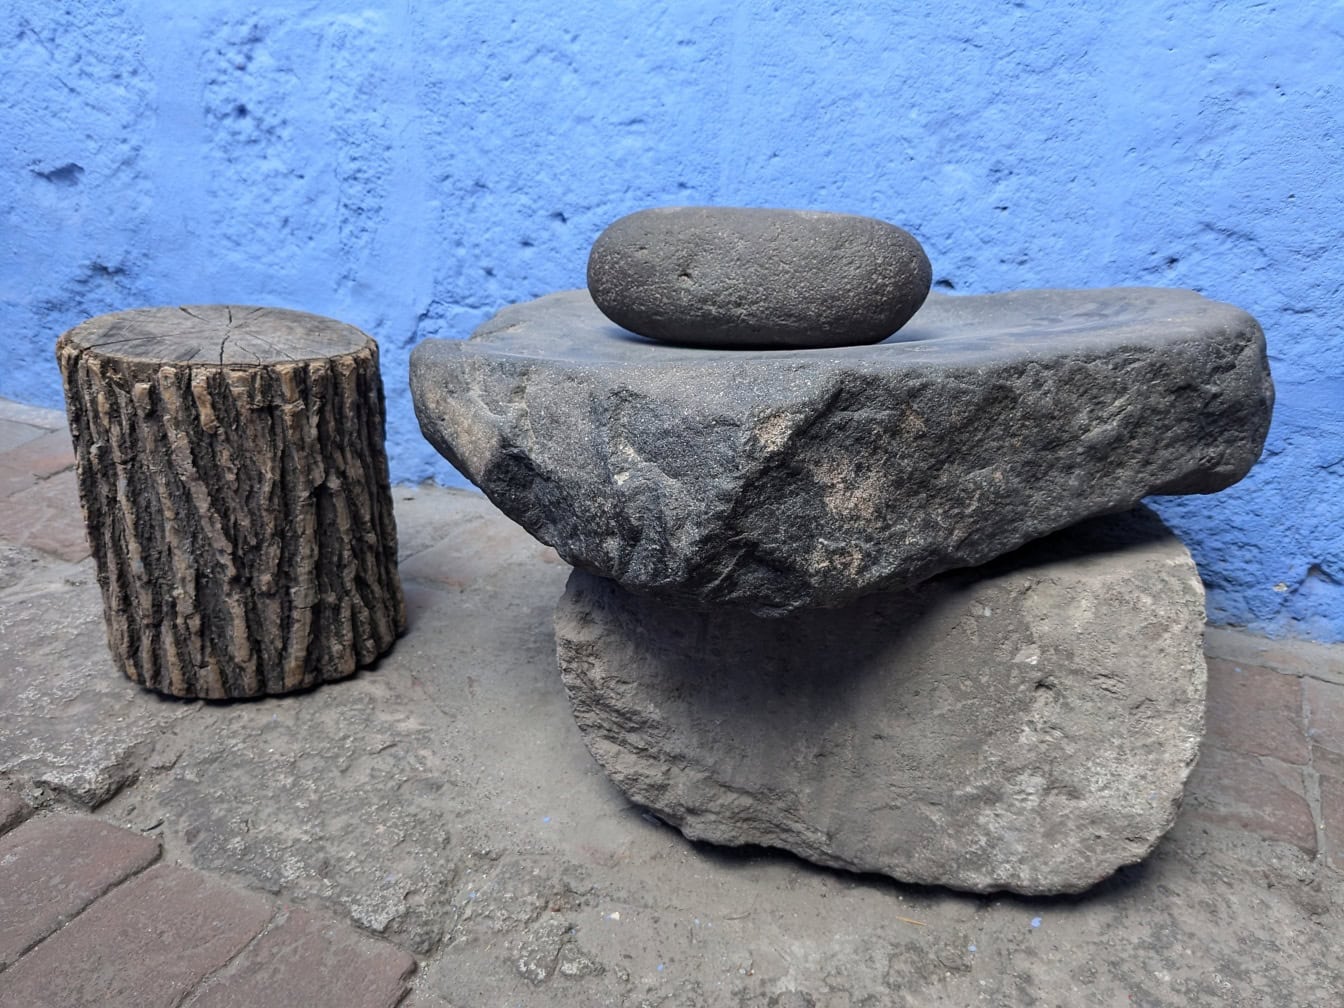 Sten brugt som køkkenredskaber, som mølle til at male mad, i klosteret Santa Catalina i Peru